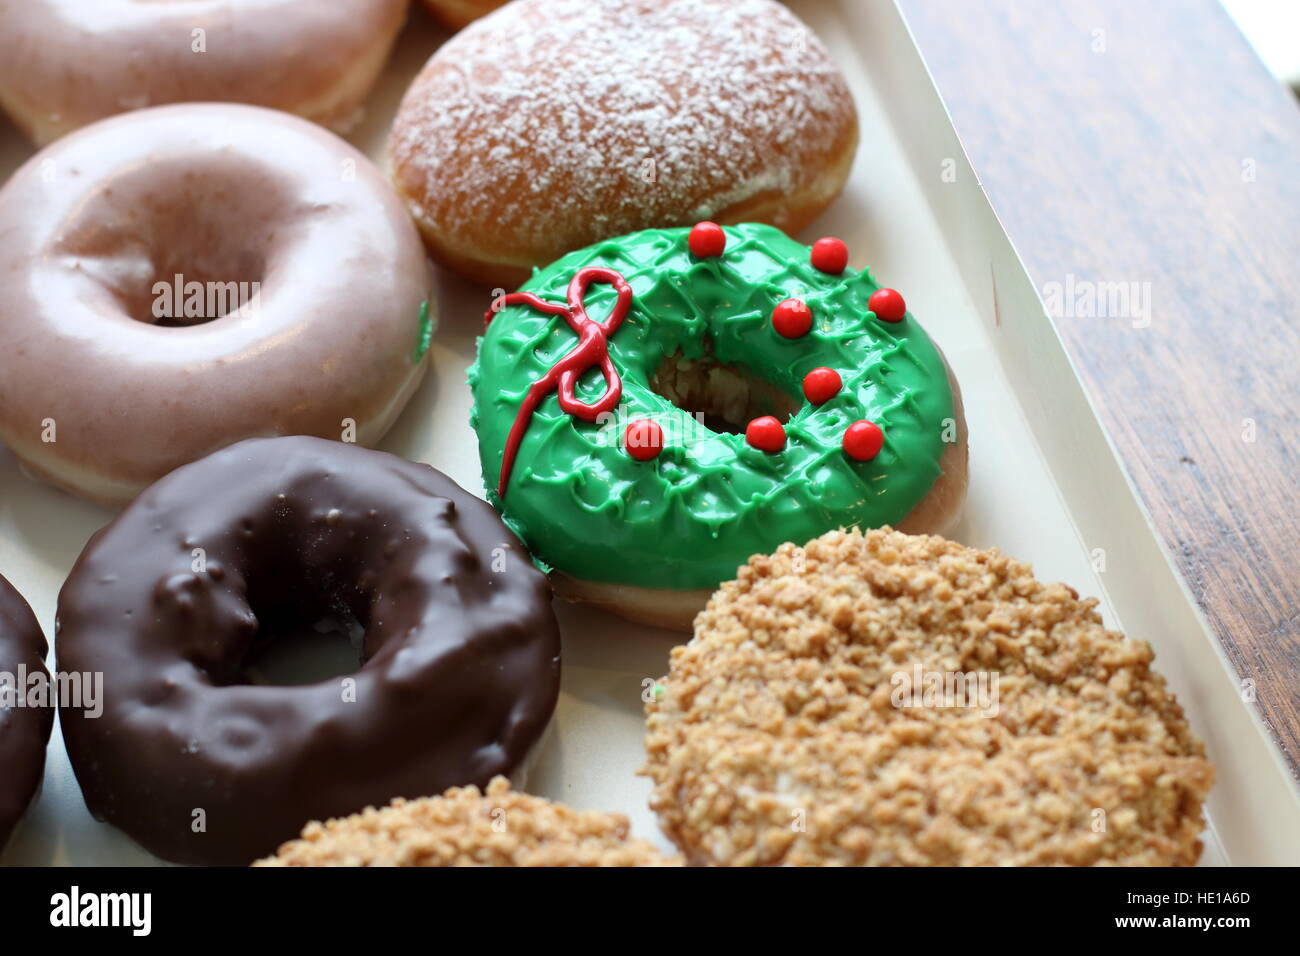 Selección de Krispy Kreme donuts australiano en un cuadro Foto de stock